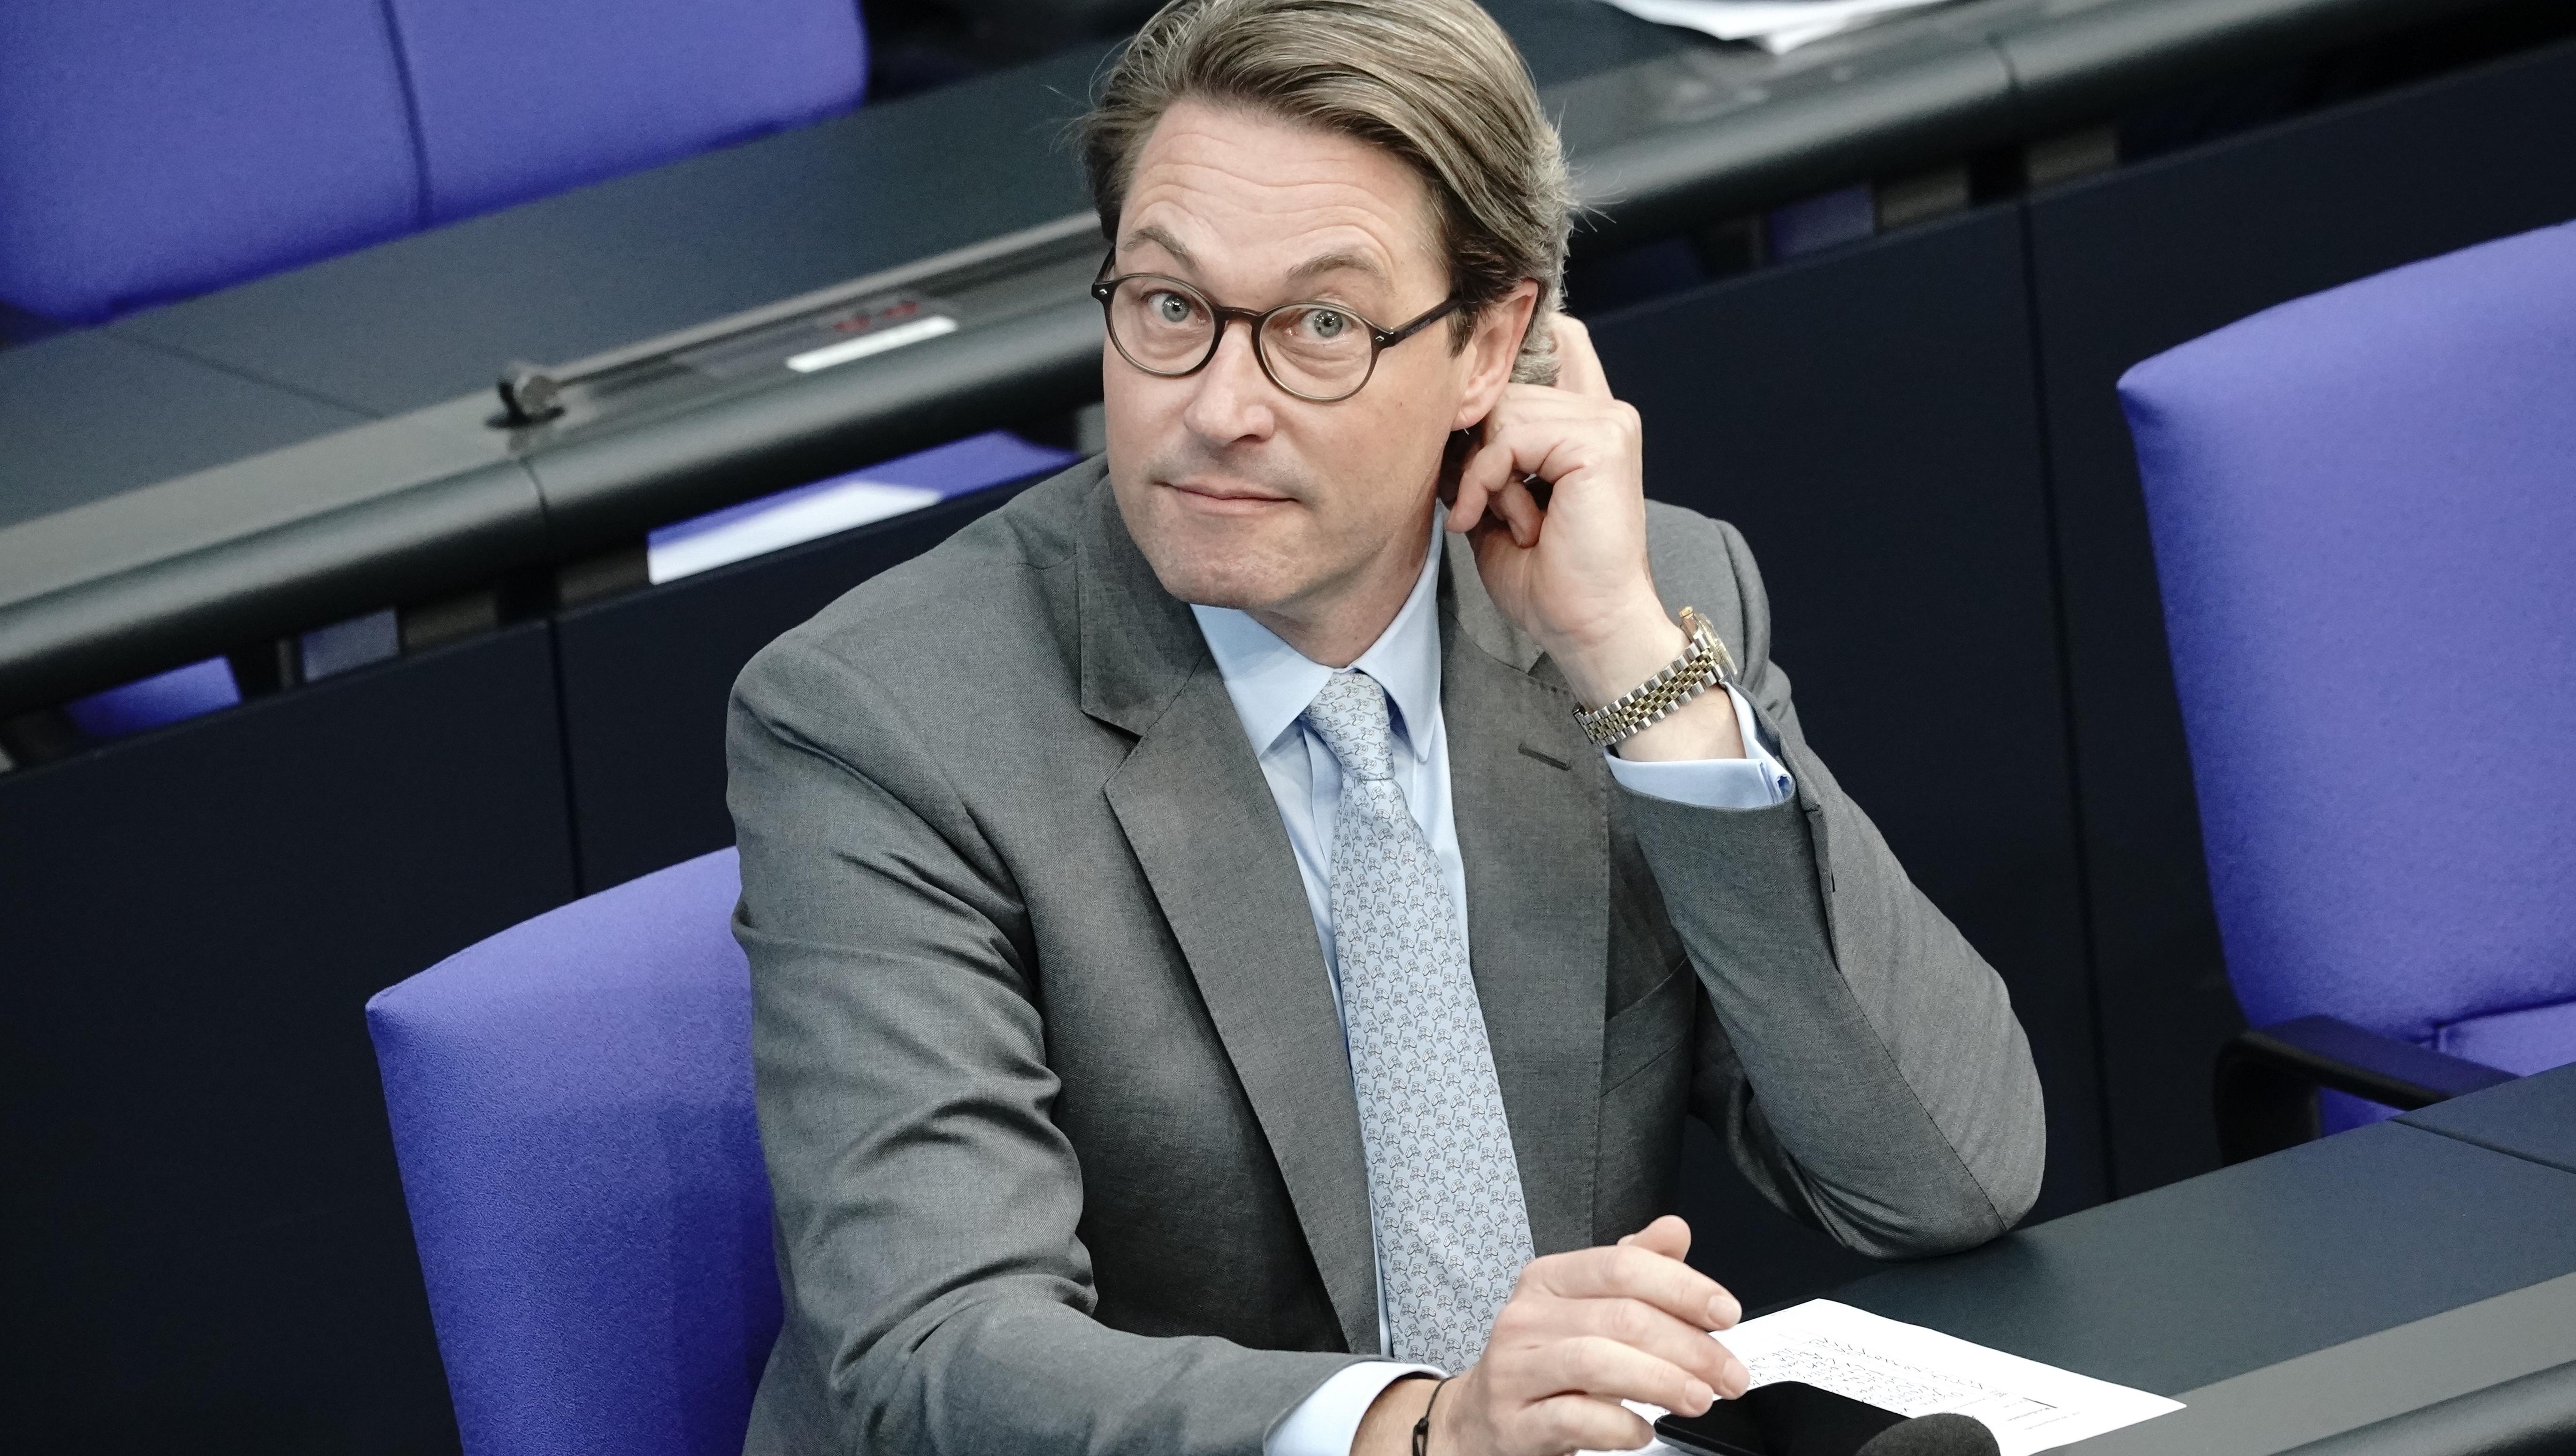 Verkehrsminister Scheuer kündigt digitalen Führerschein an